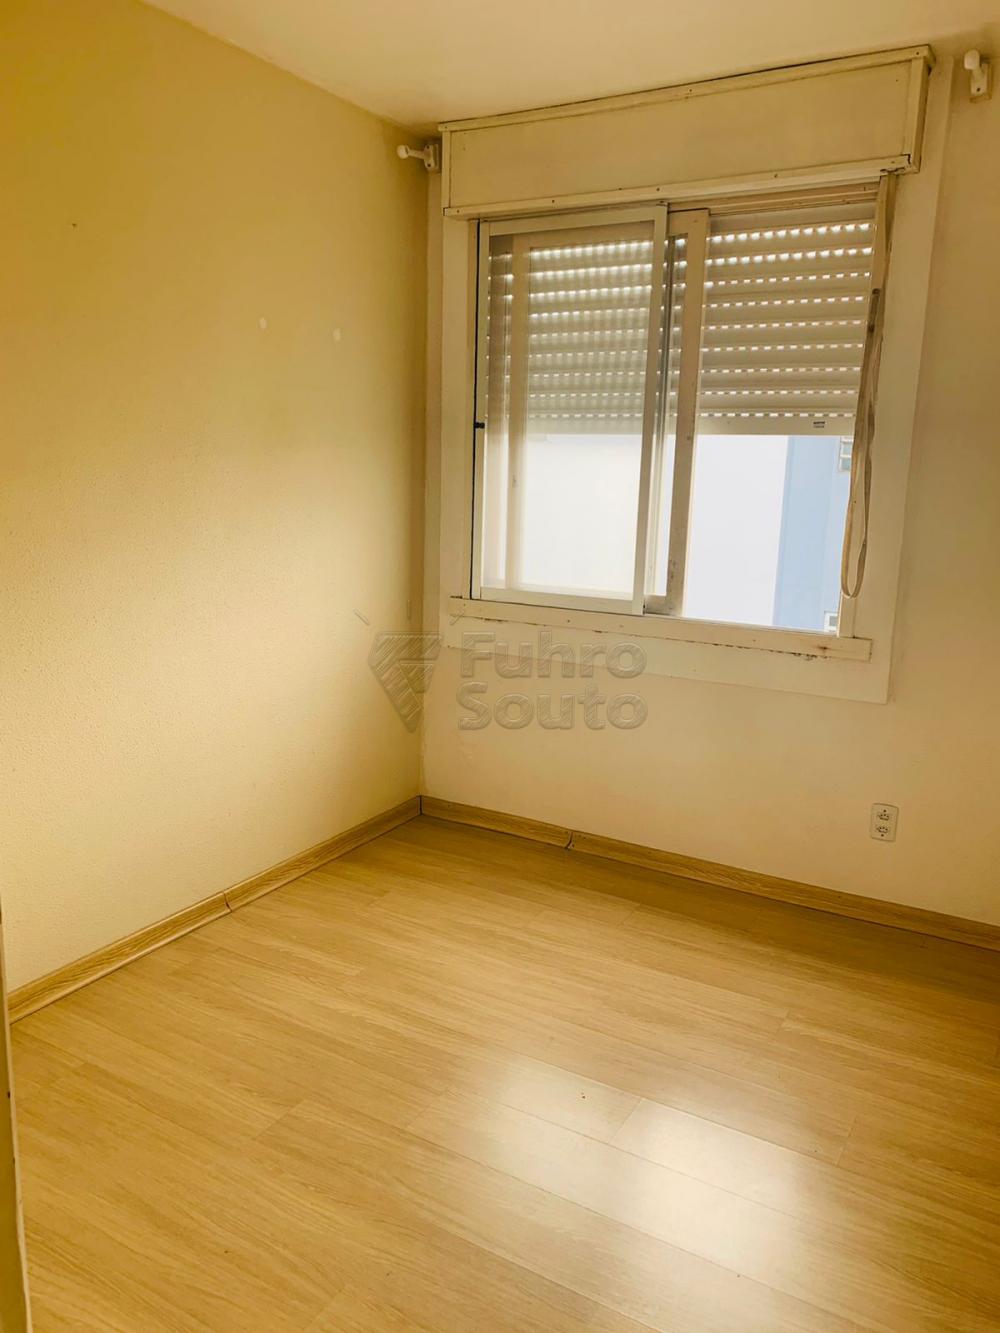 Comprar Apartamento / Padrão em Pelotas R$ 200.000,00 - Foto 2